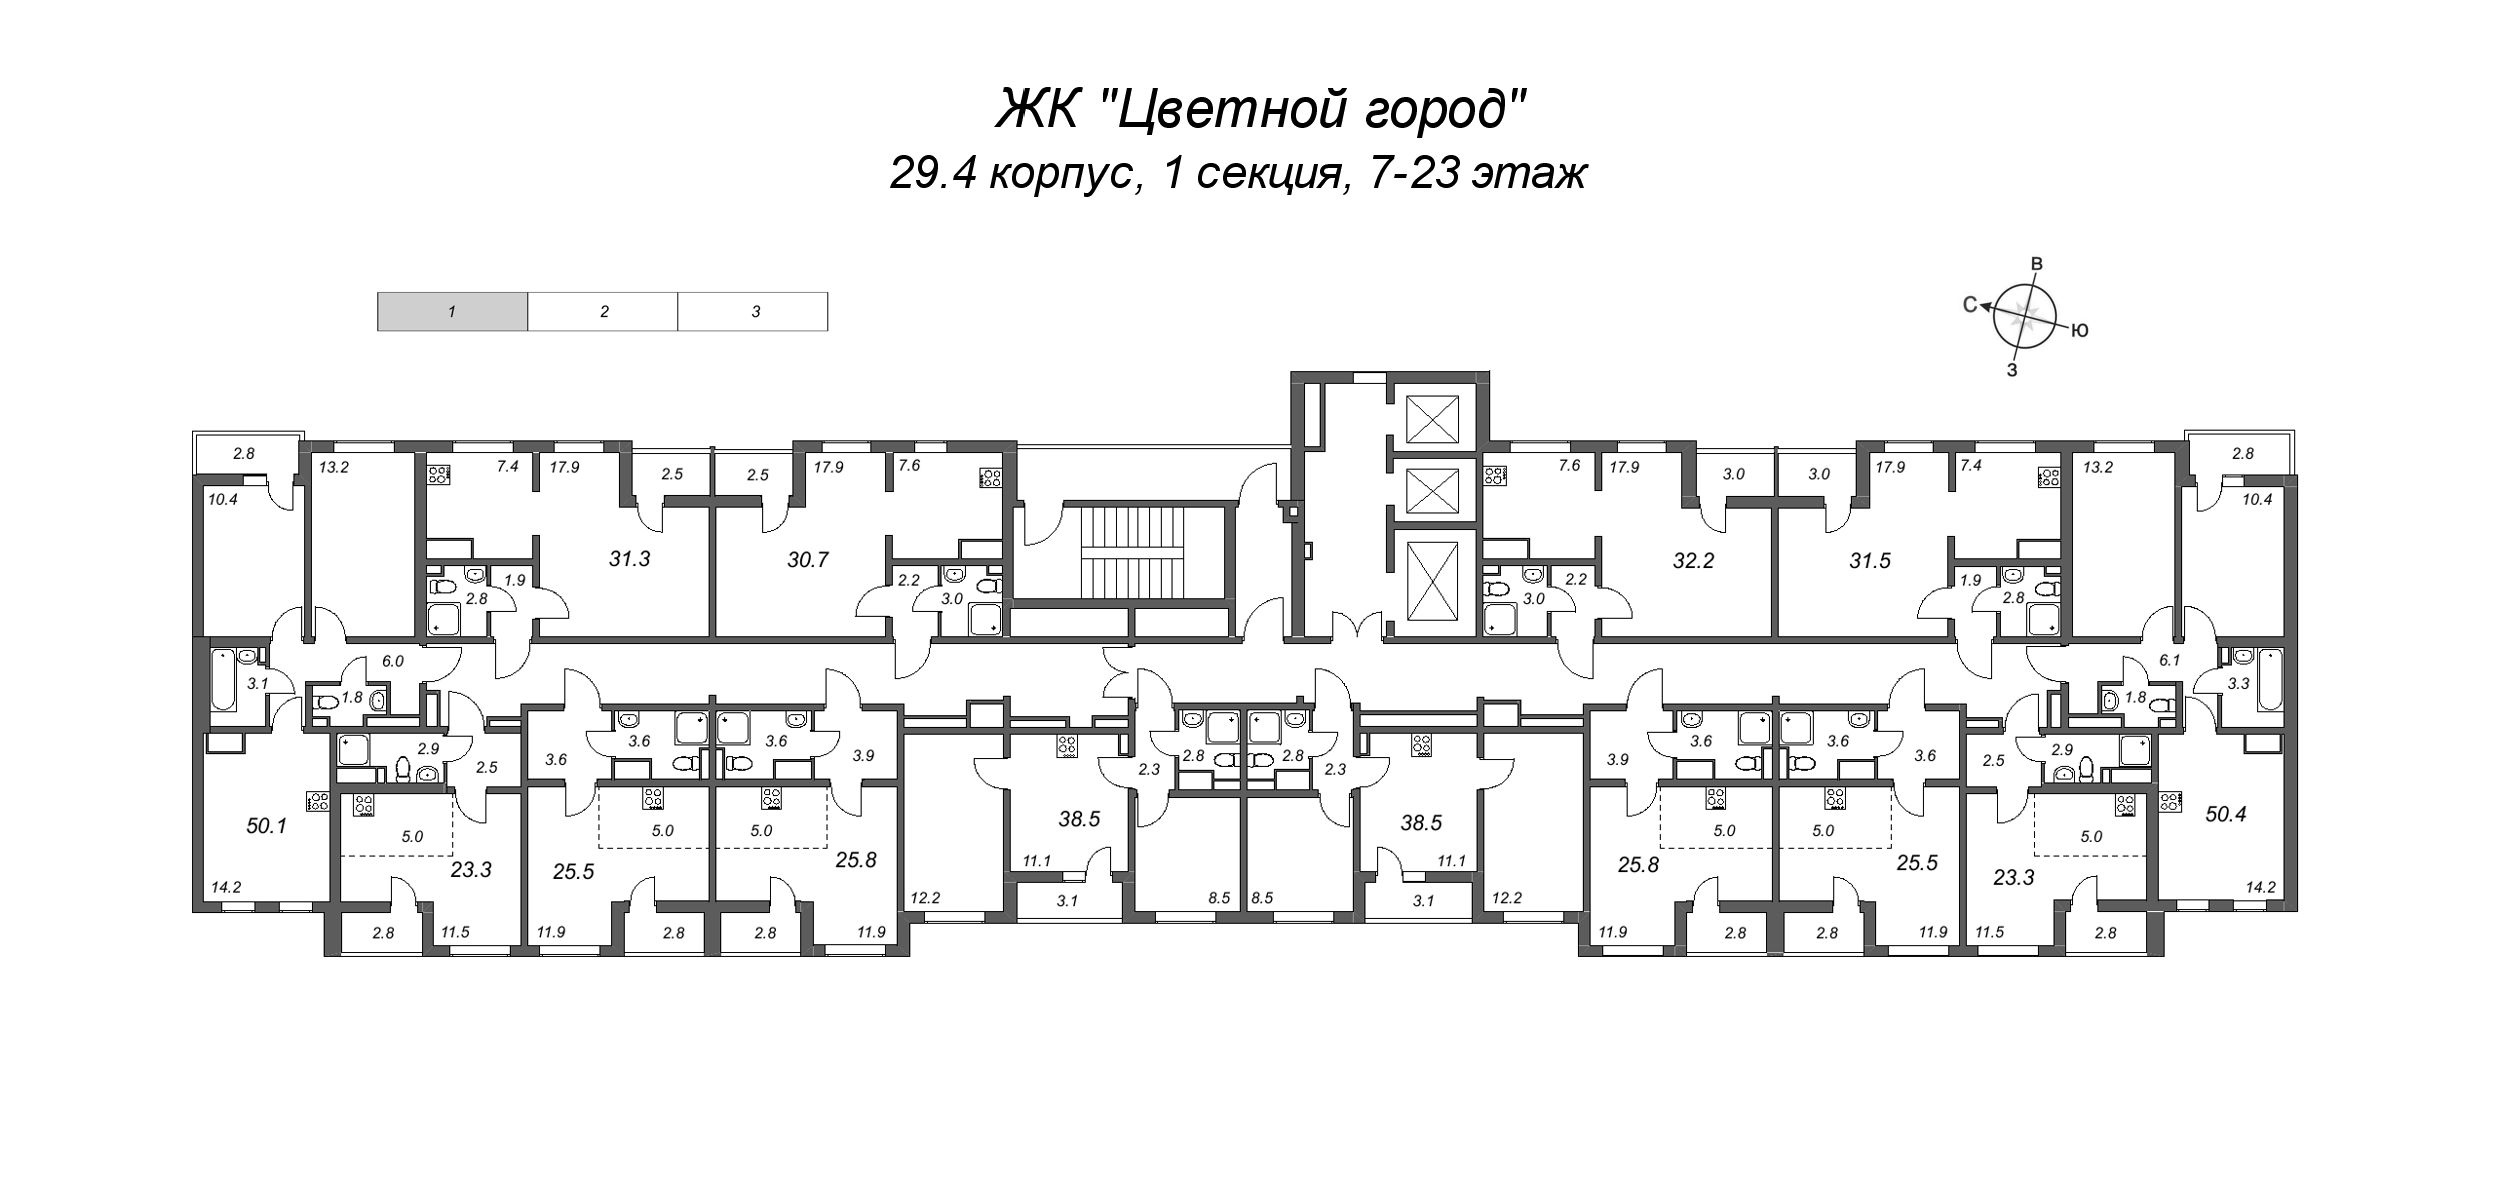 Квартира-студия, 23.3 м² в ЖК "Цветной город" - планировка этажа